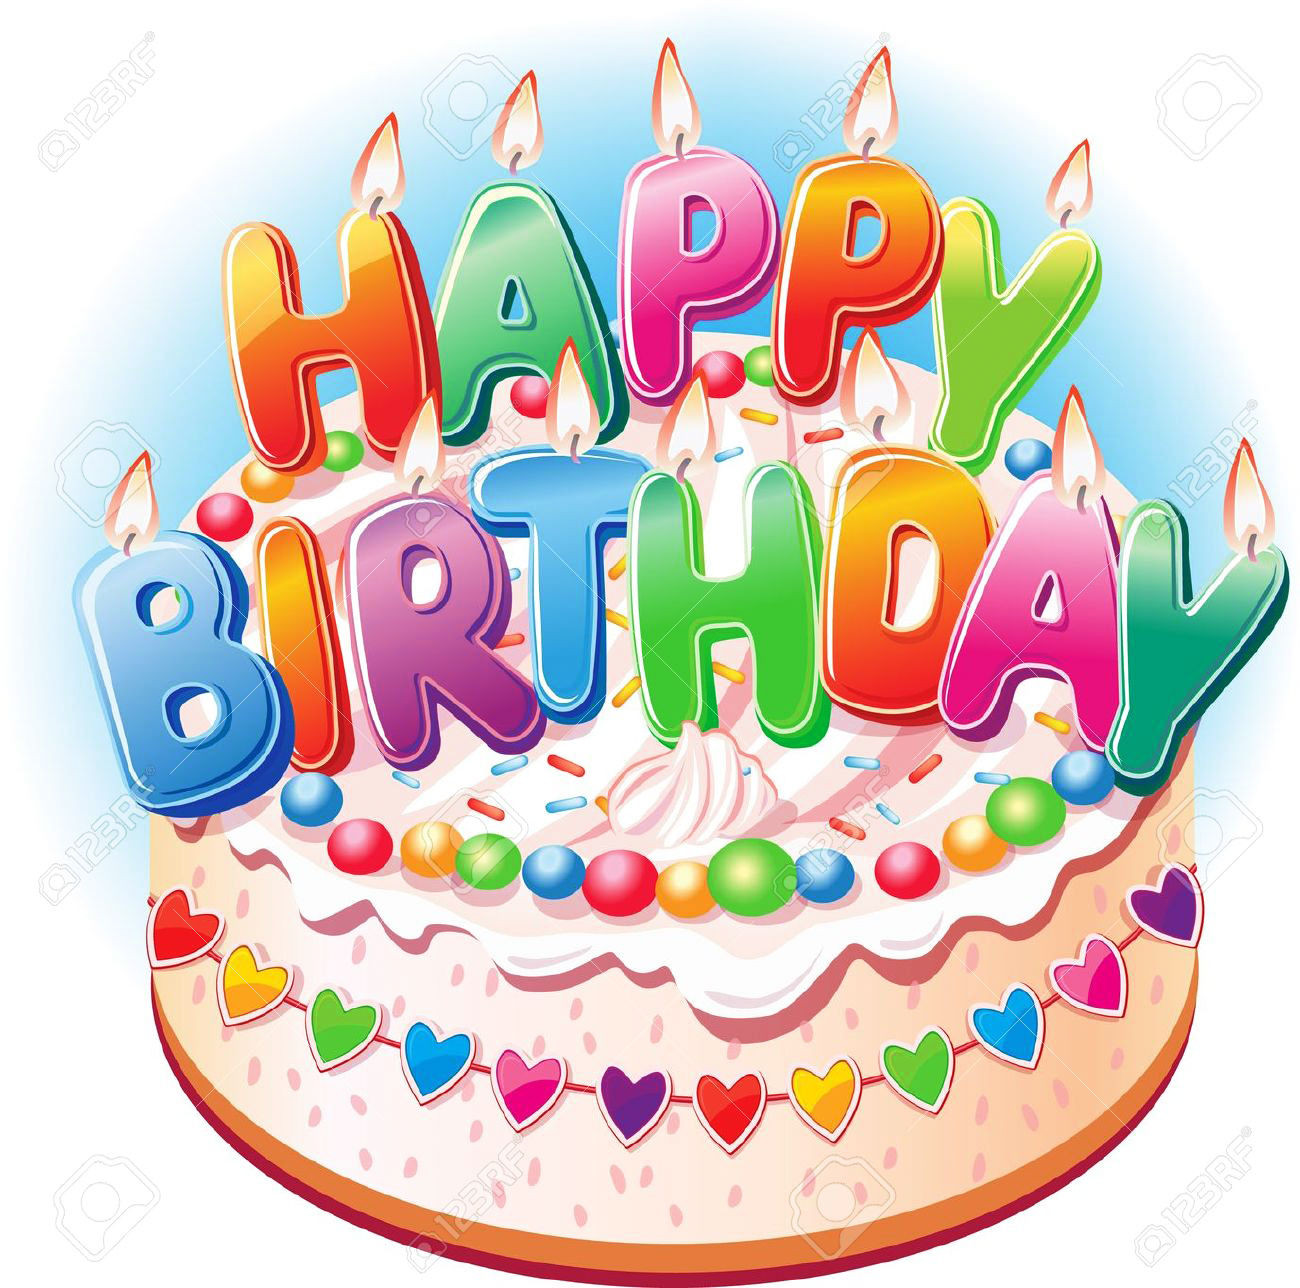 Happy Birthday Cakes Images
 Top 100 Happy Birthday Cake